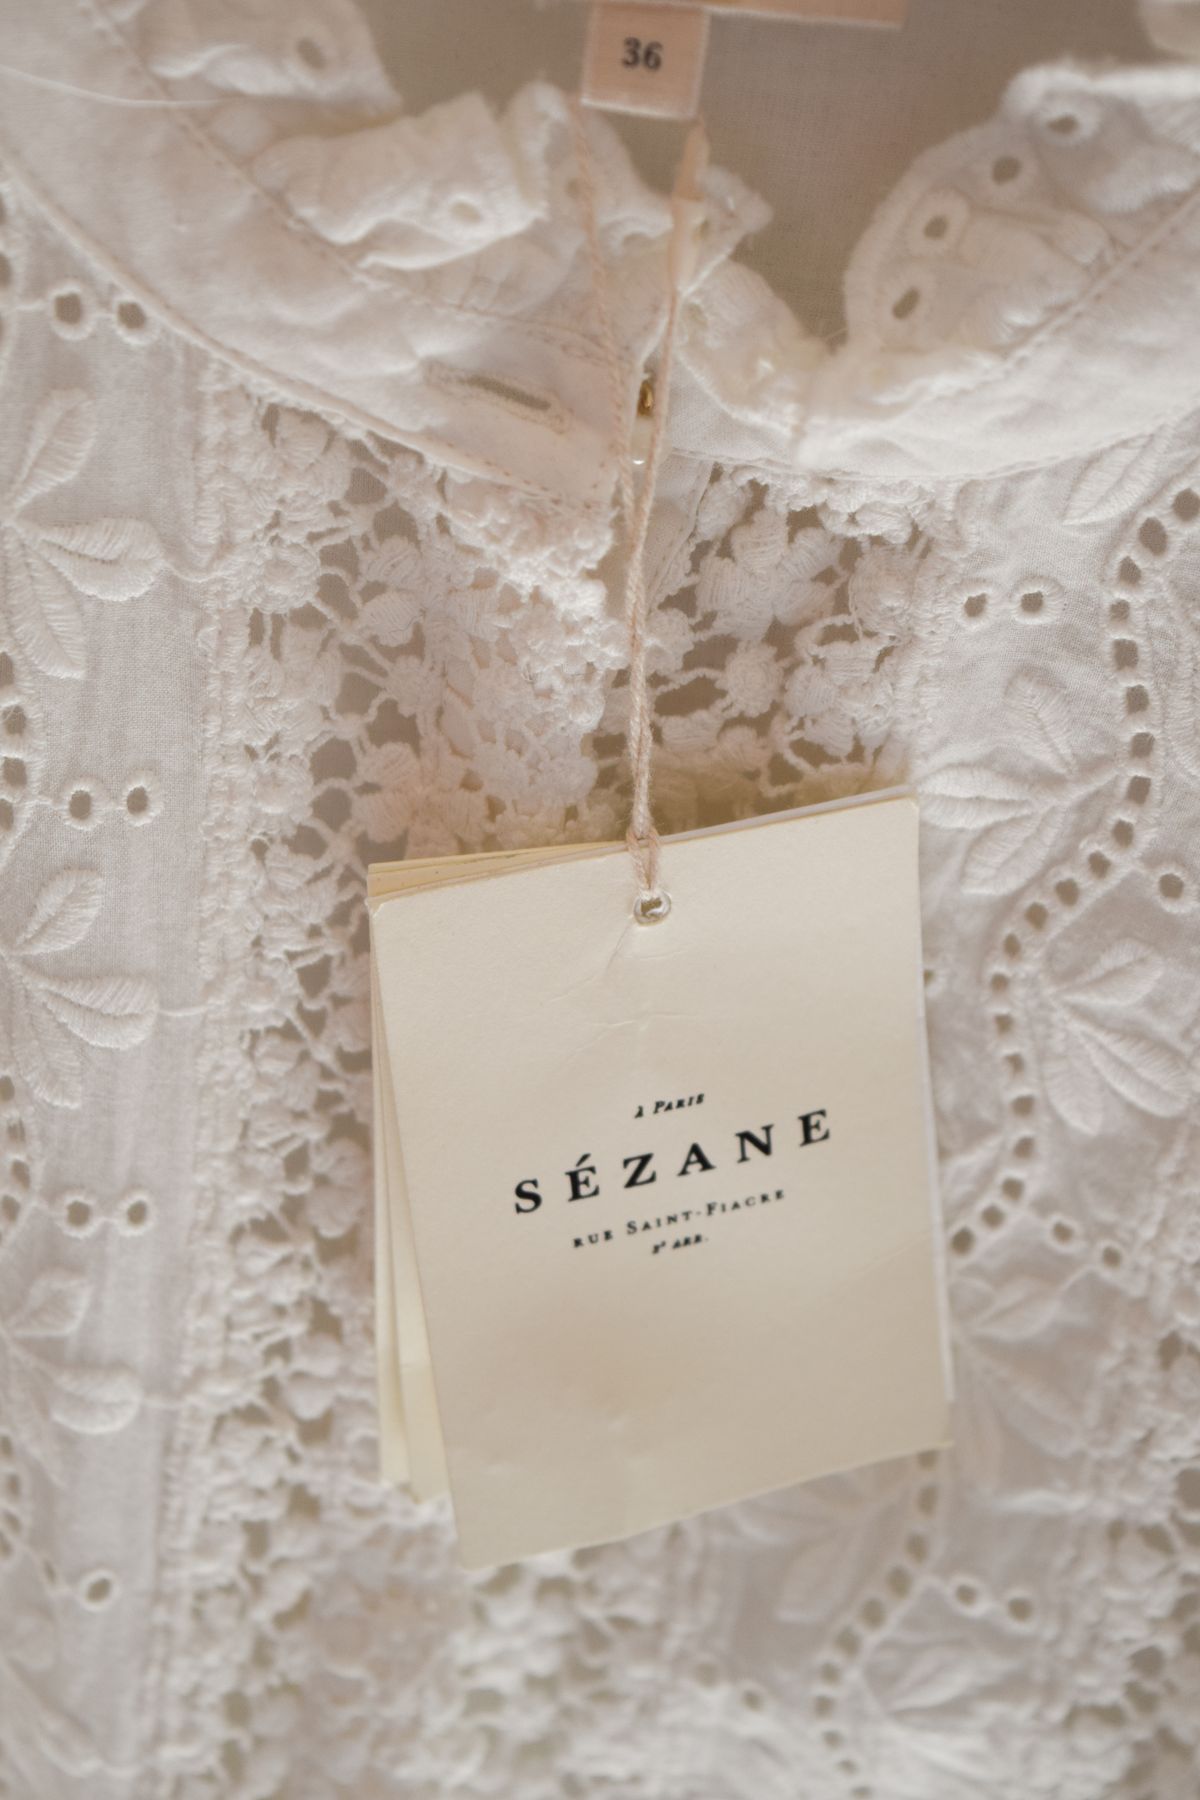 Sézane Women's Clothing stores in Paris france